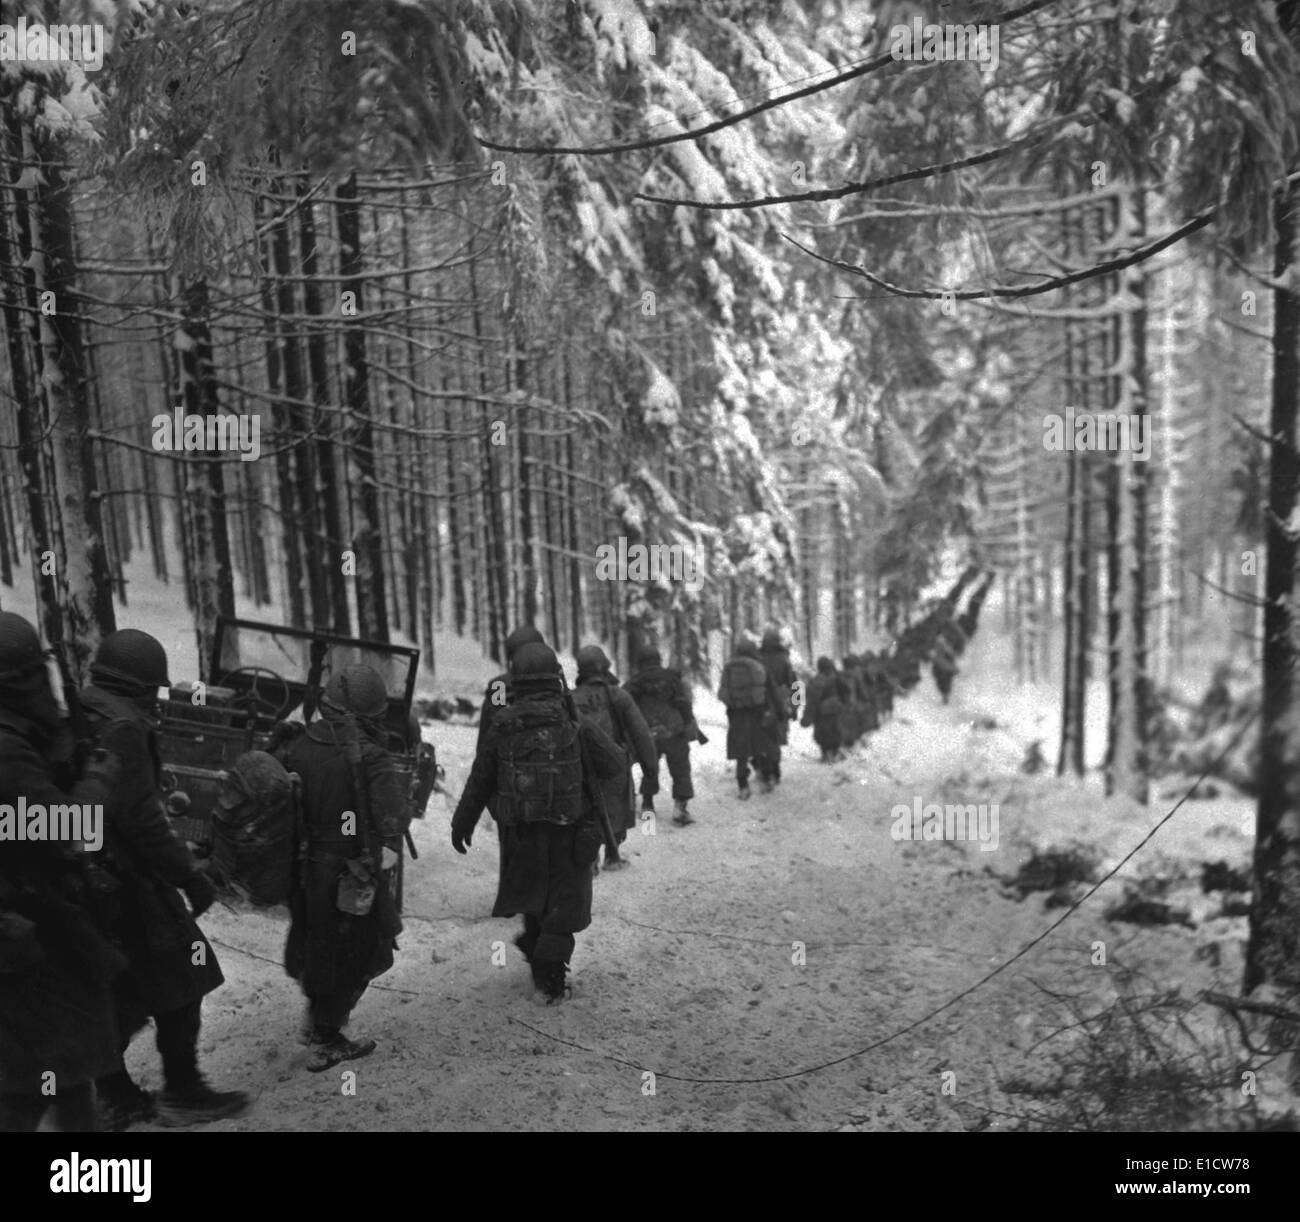 Des soldats américains mars le long de la route couverte de neige dans la Bataille des Ardennes. Ils avançaient pour bloquer l'armée allemande en retraite Banque D'Images